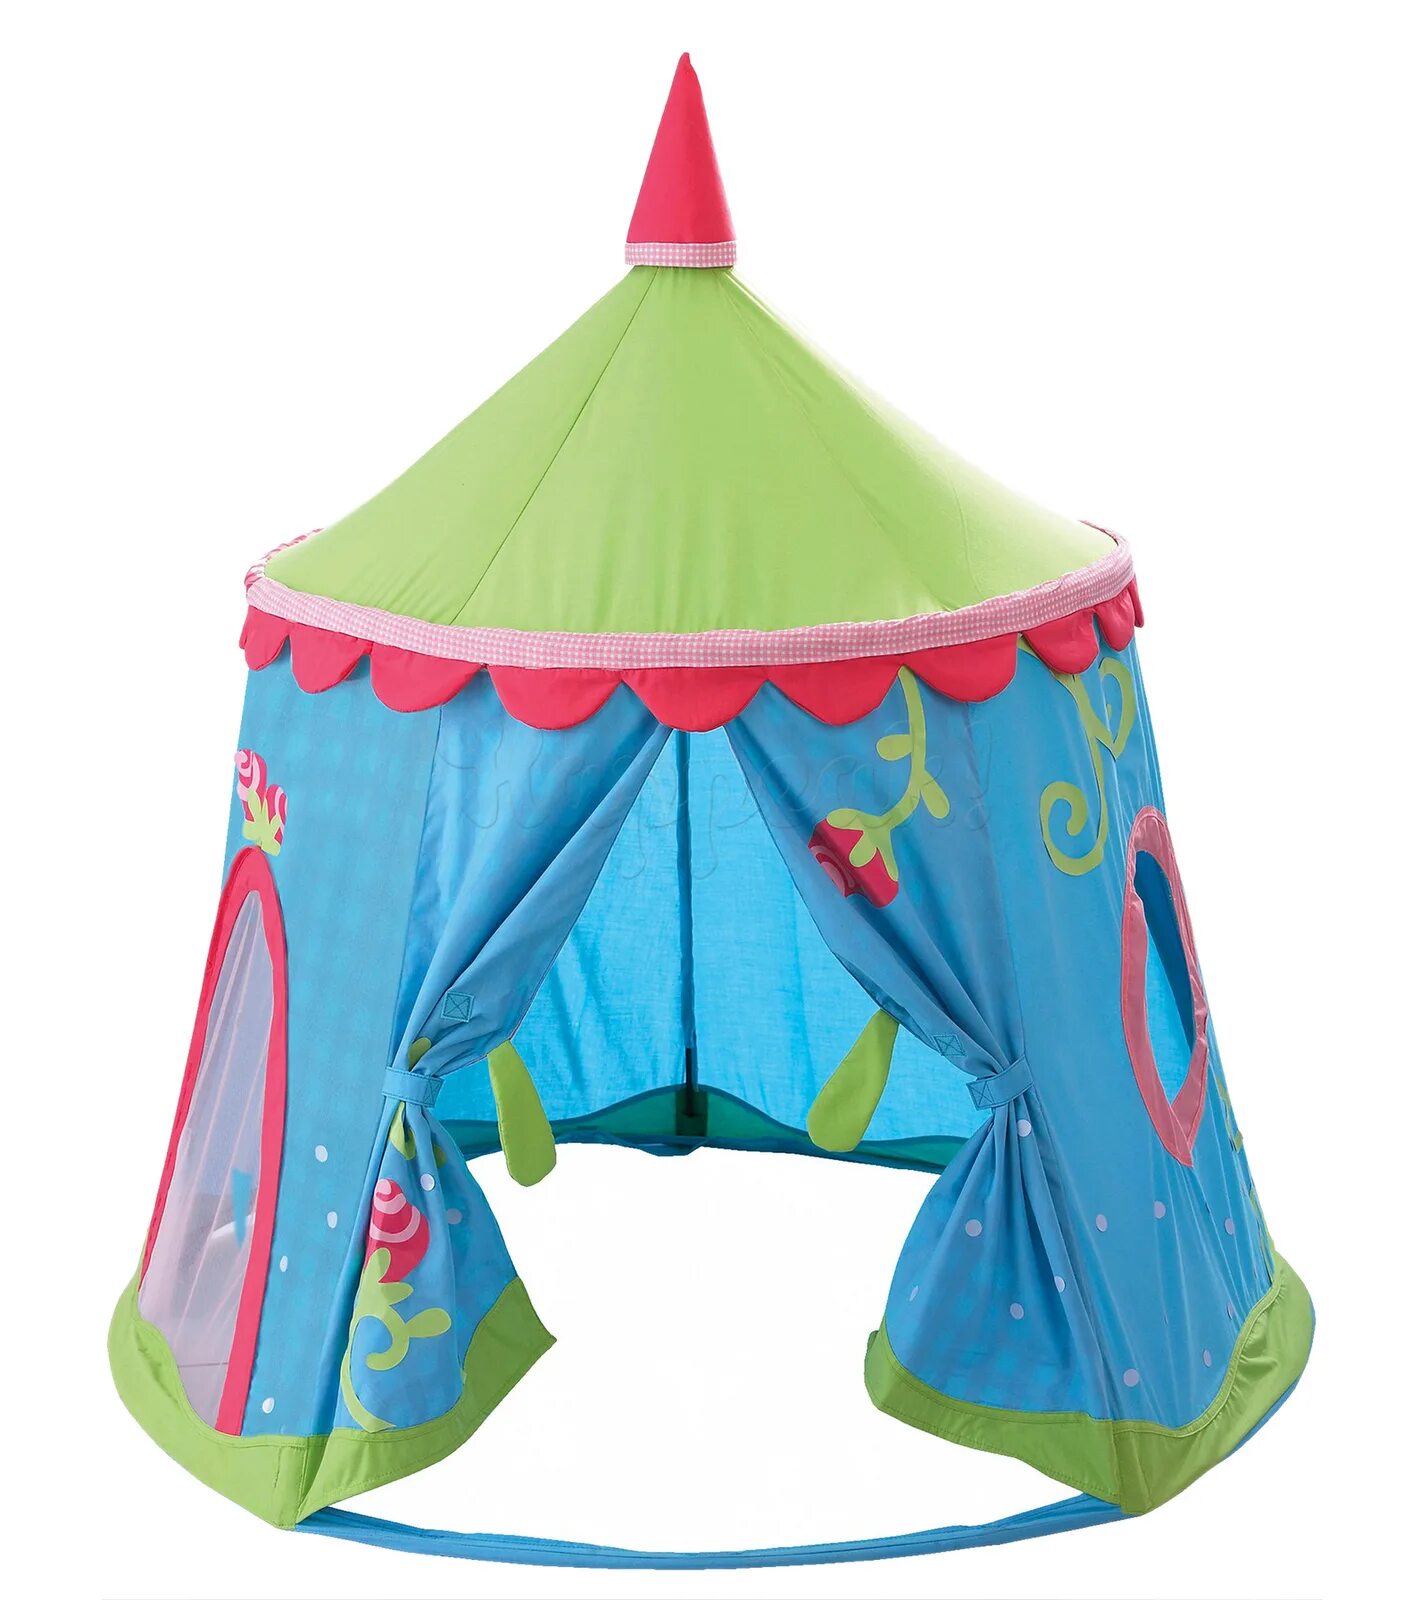 Палатка хаба хаба купить. Игровая палатка haba. Haba шатер детский. Игровые палатки haba Farm Play Tent by haba. Детский шатер палатка.